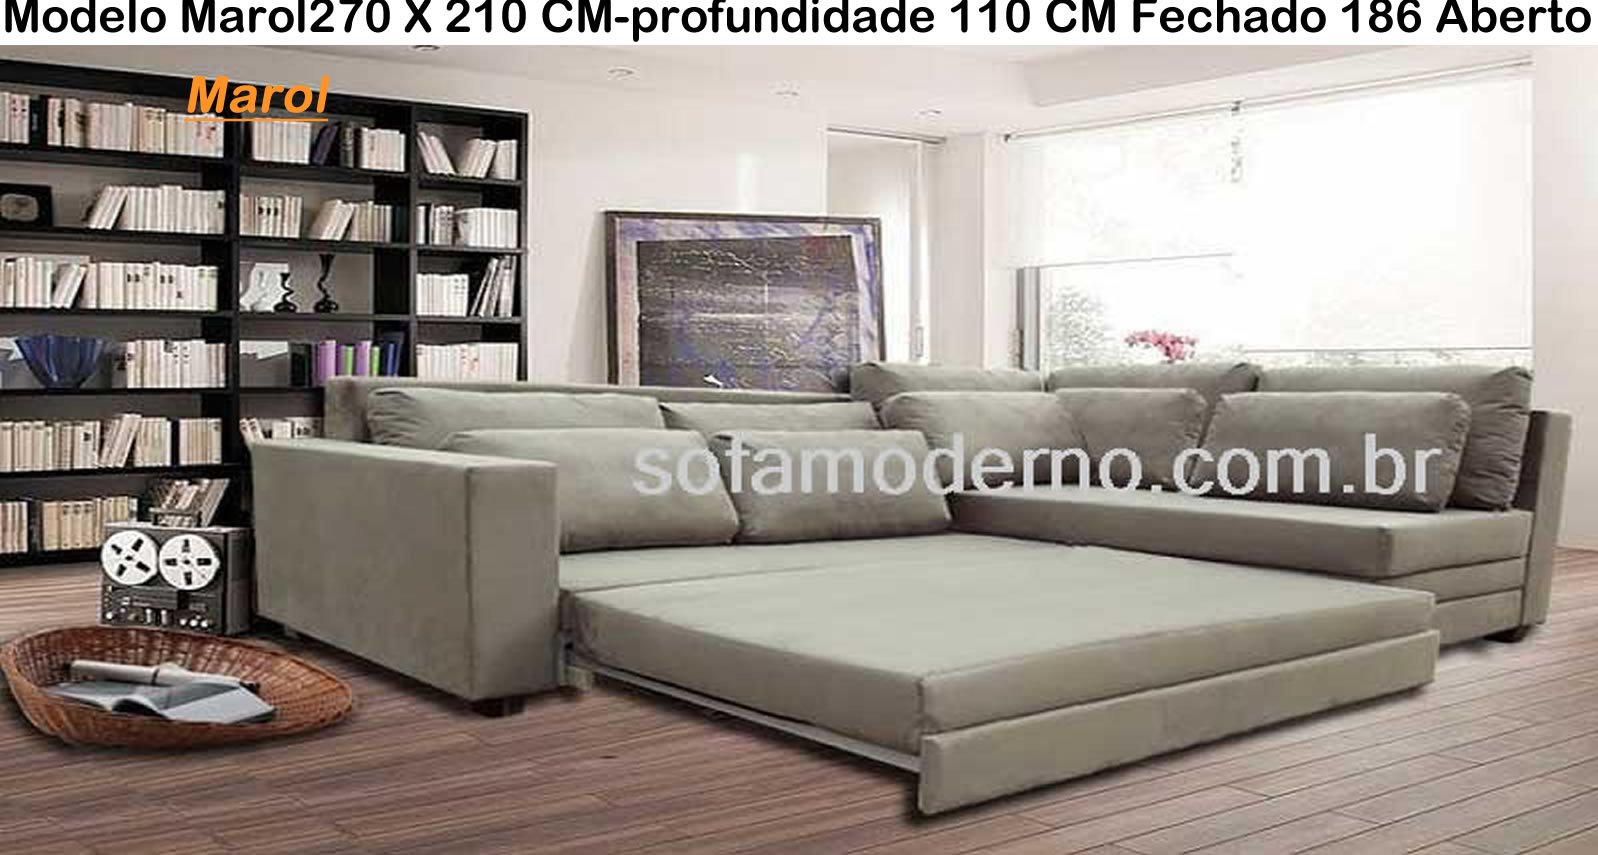 Sofa estilo cama - Sofá cama Casal - Sofá Cama Solteiro | sofamoderno.com.br